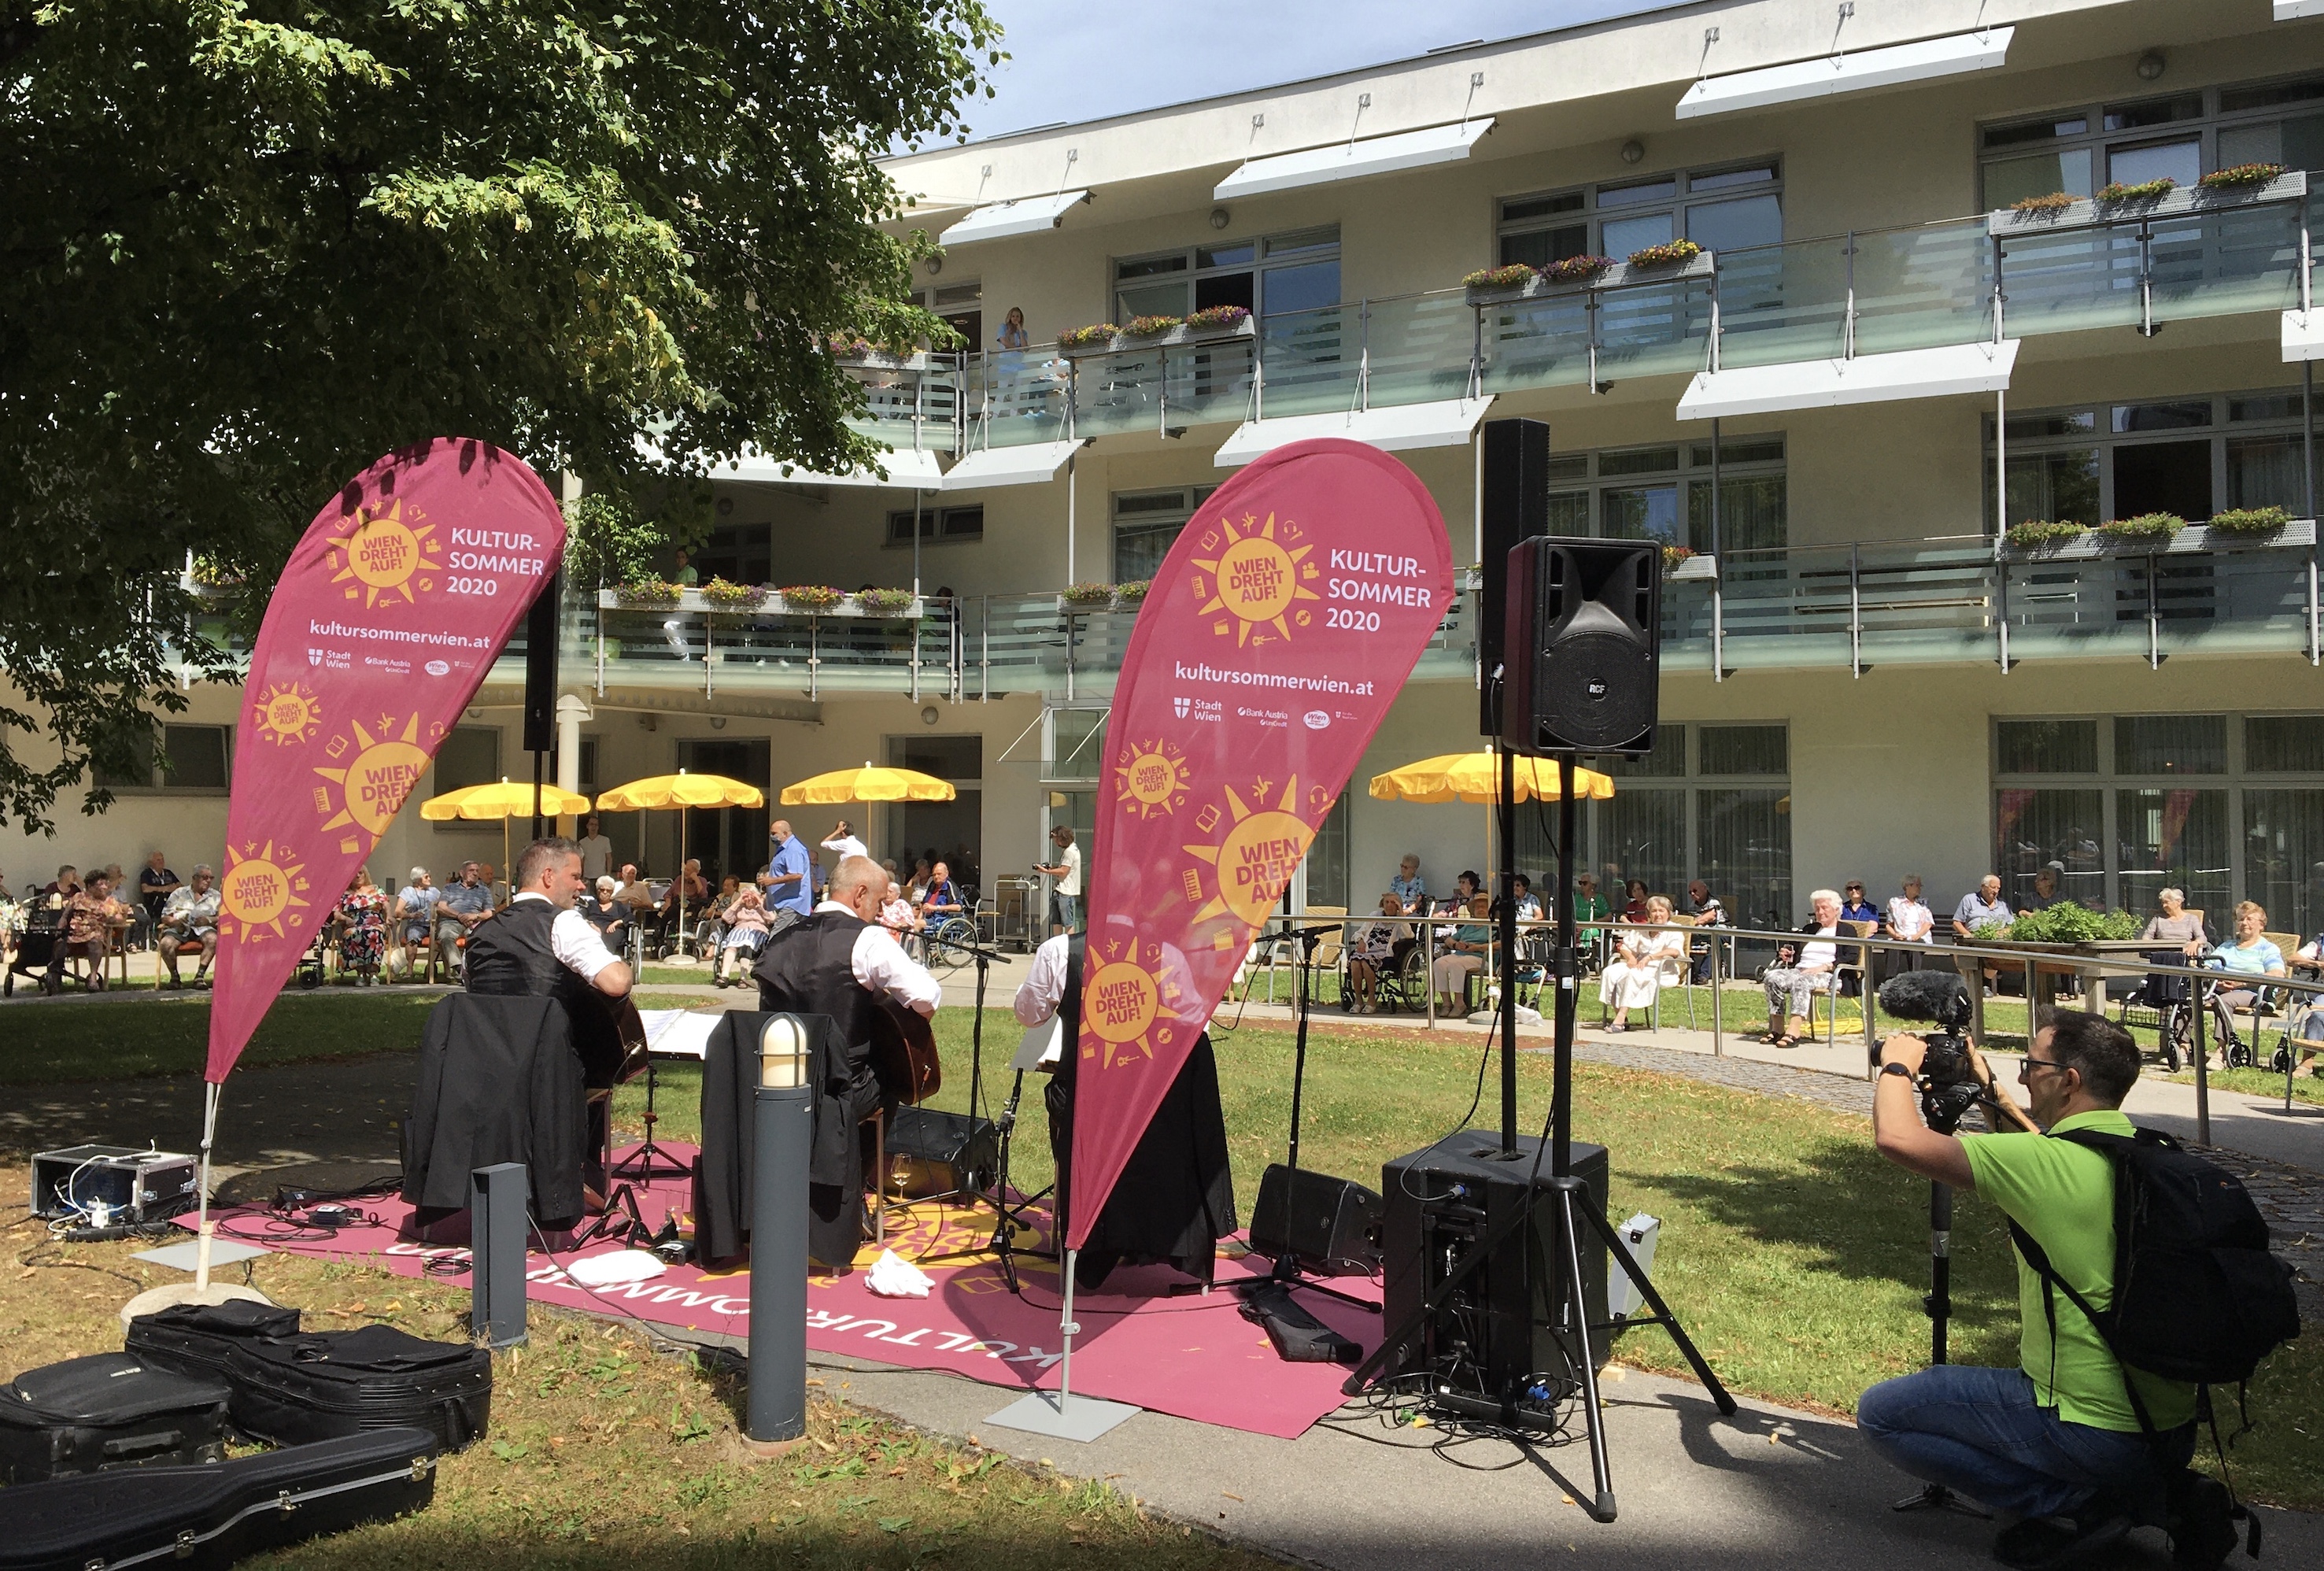 Die Band Trio Lepschi live bei ihrem Ständchen in Ehren im Haus Atzgersdorf (Wiener Kultursommer 2020).